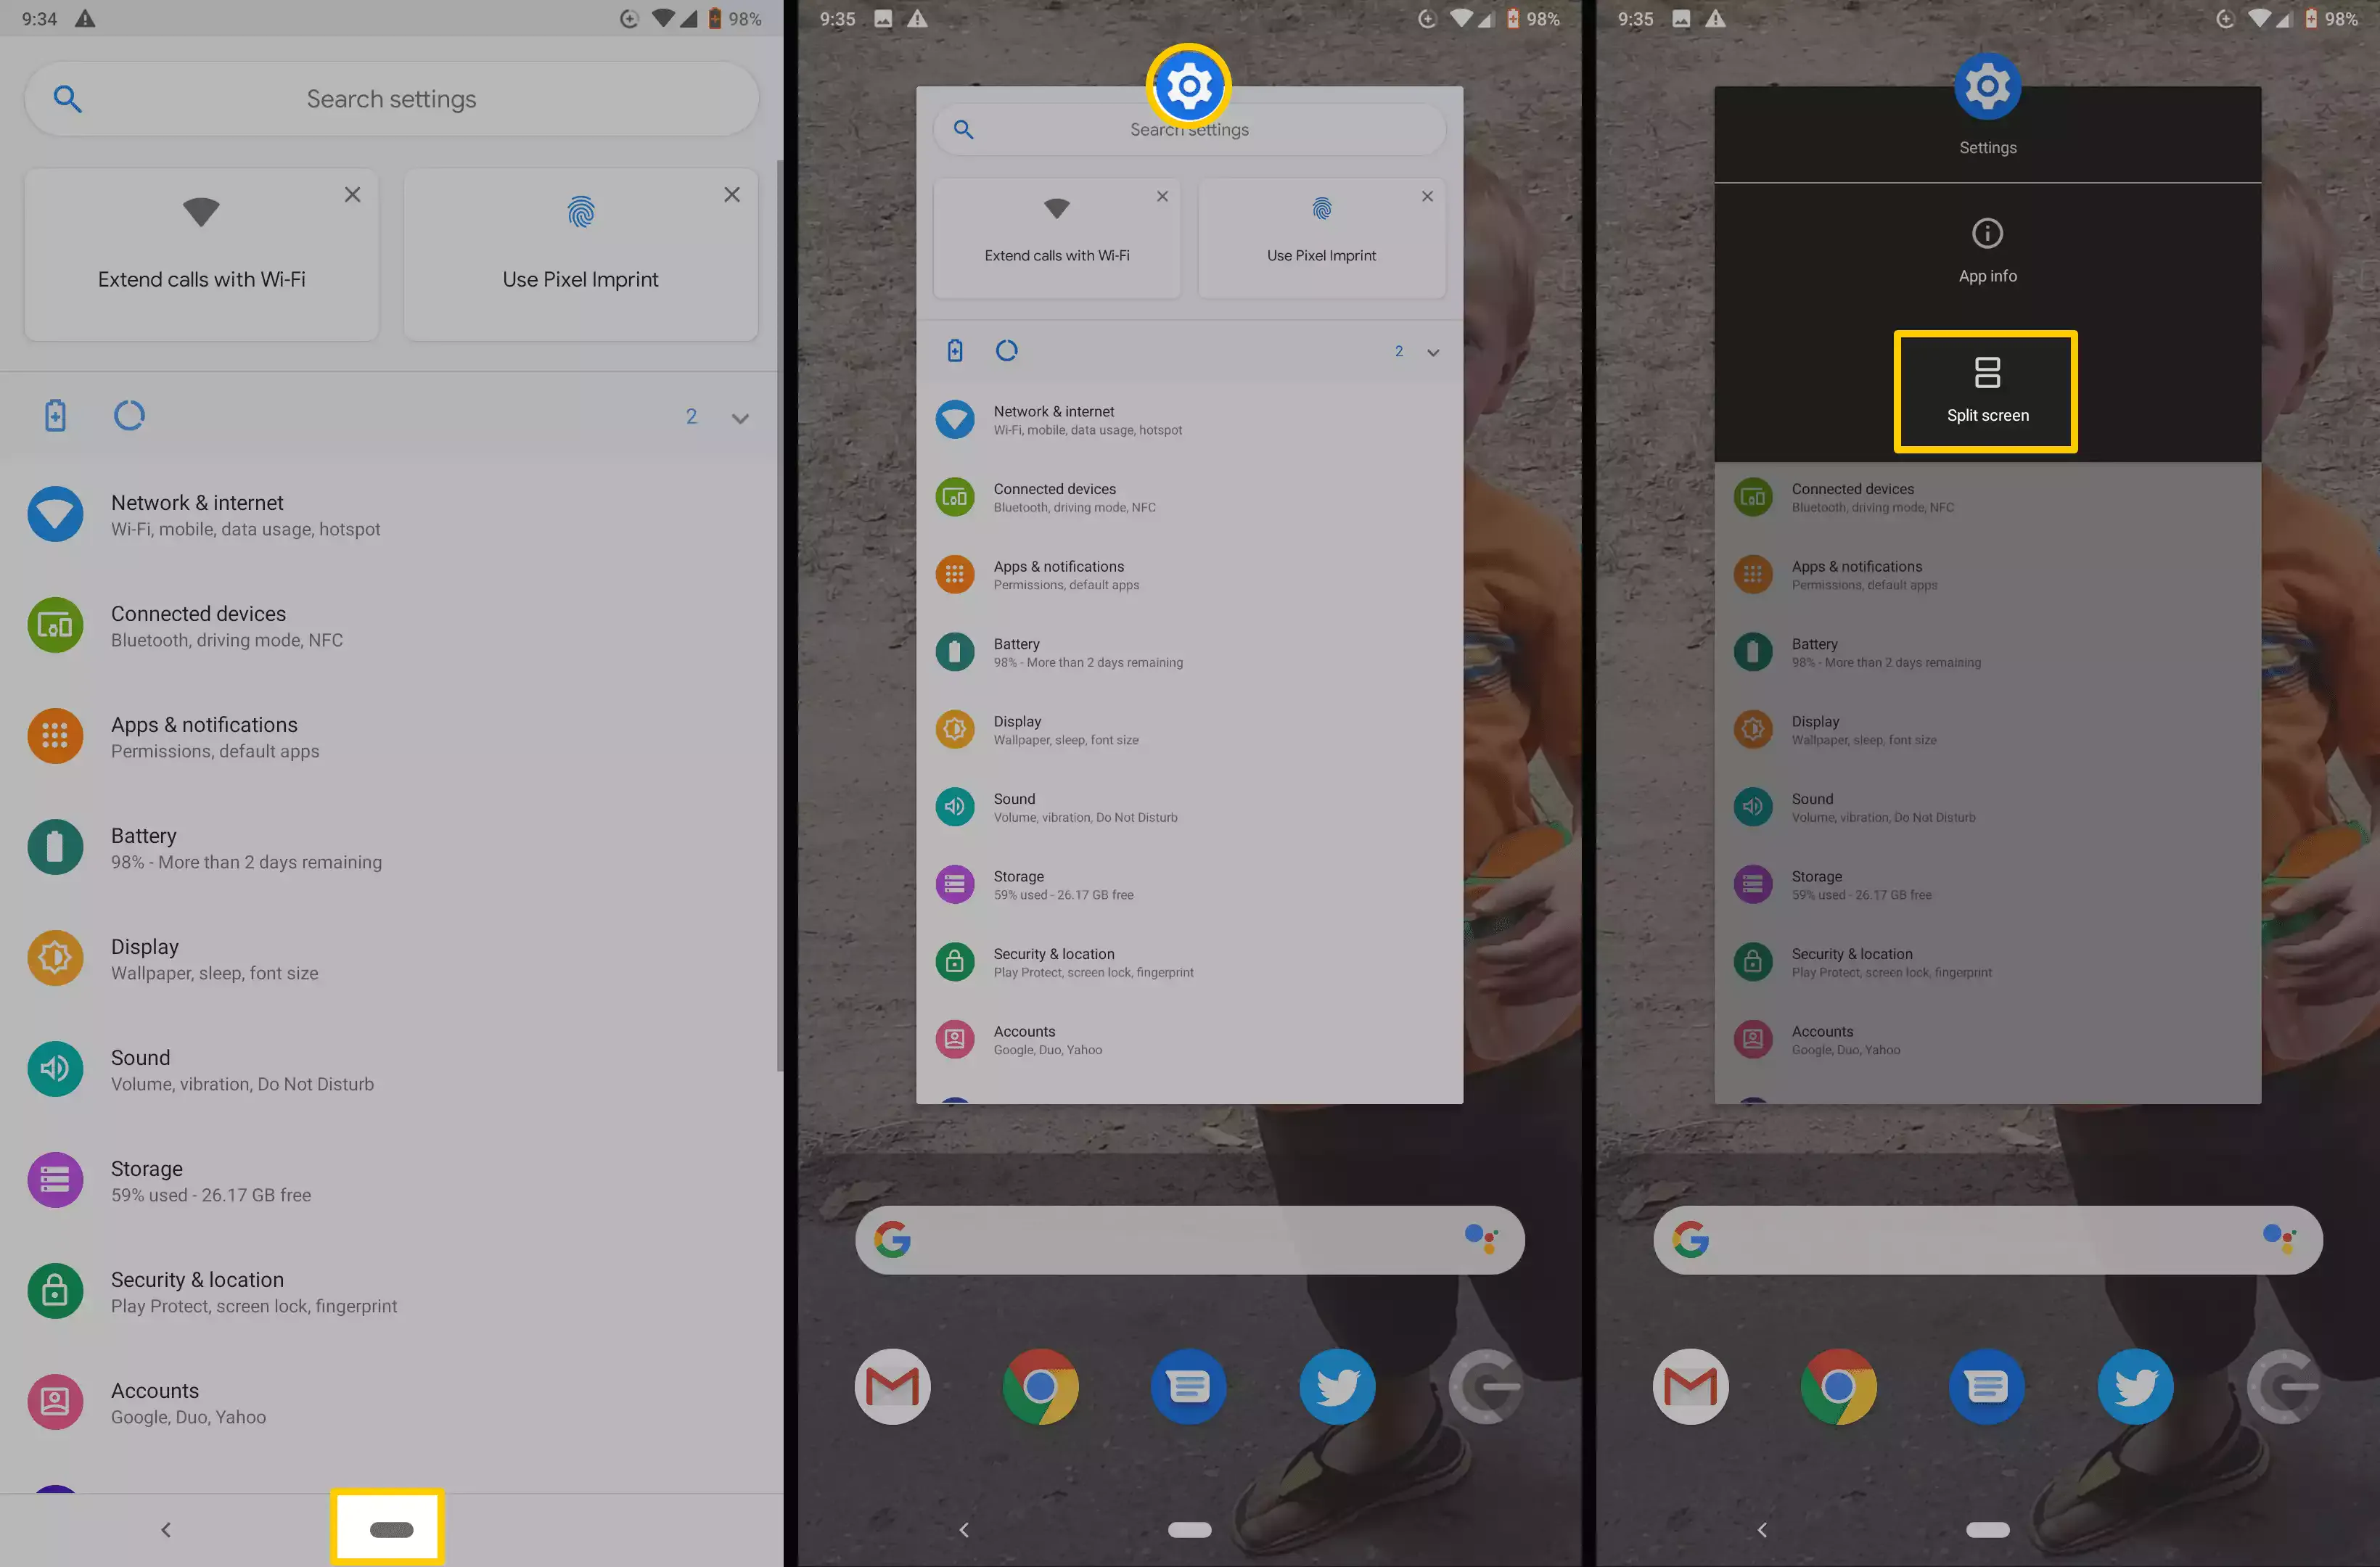 Ảnh chụp màn hình cho biết cách truy cập tùy chọn Chia đôi màn hình trong Android gốc.